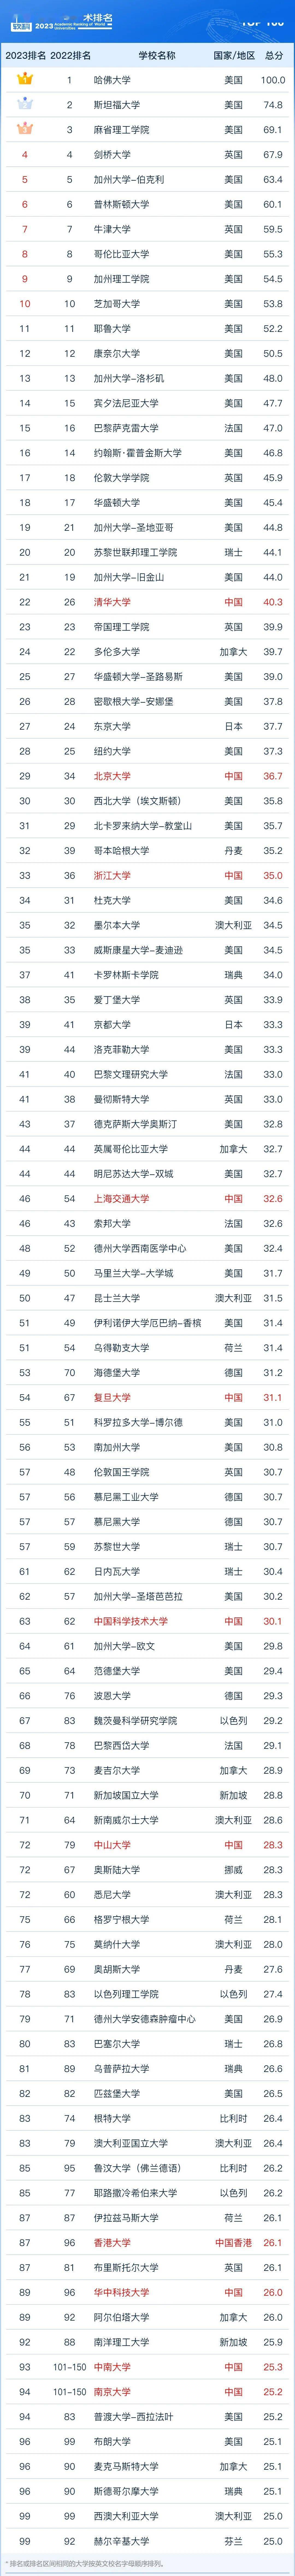 中国大陆版《2023软科世界大学学术排名》